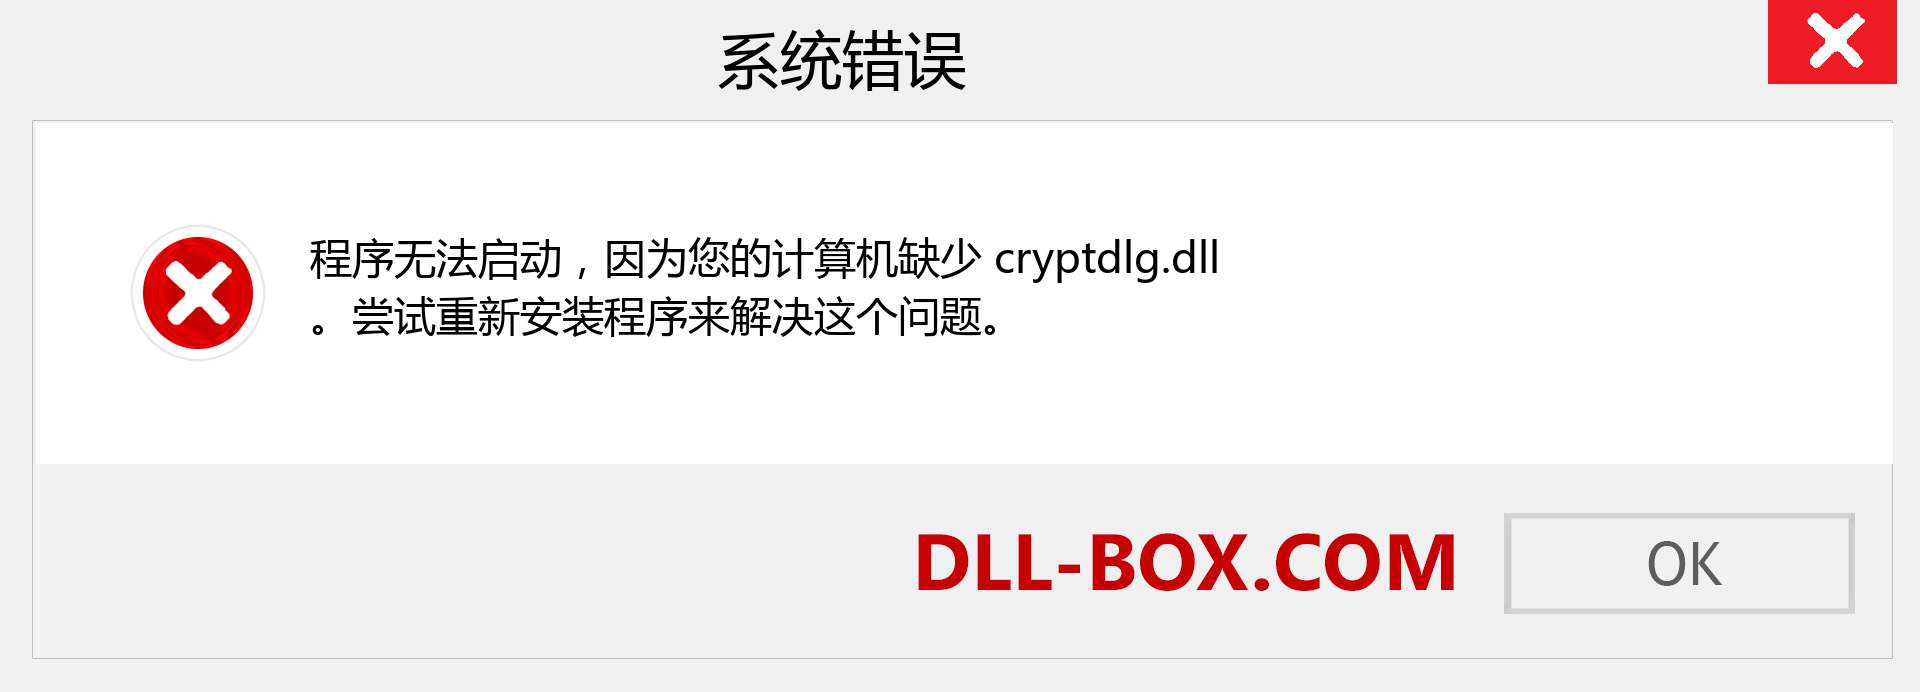 cryptdlg.dll 文件丢失？。 适用于 Windows 7、8、10 的下载 - 修复 Windows、照片、图像上的 cryptdlg dll 丢失错误